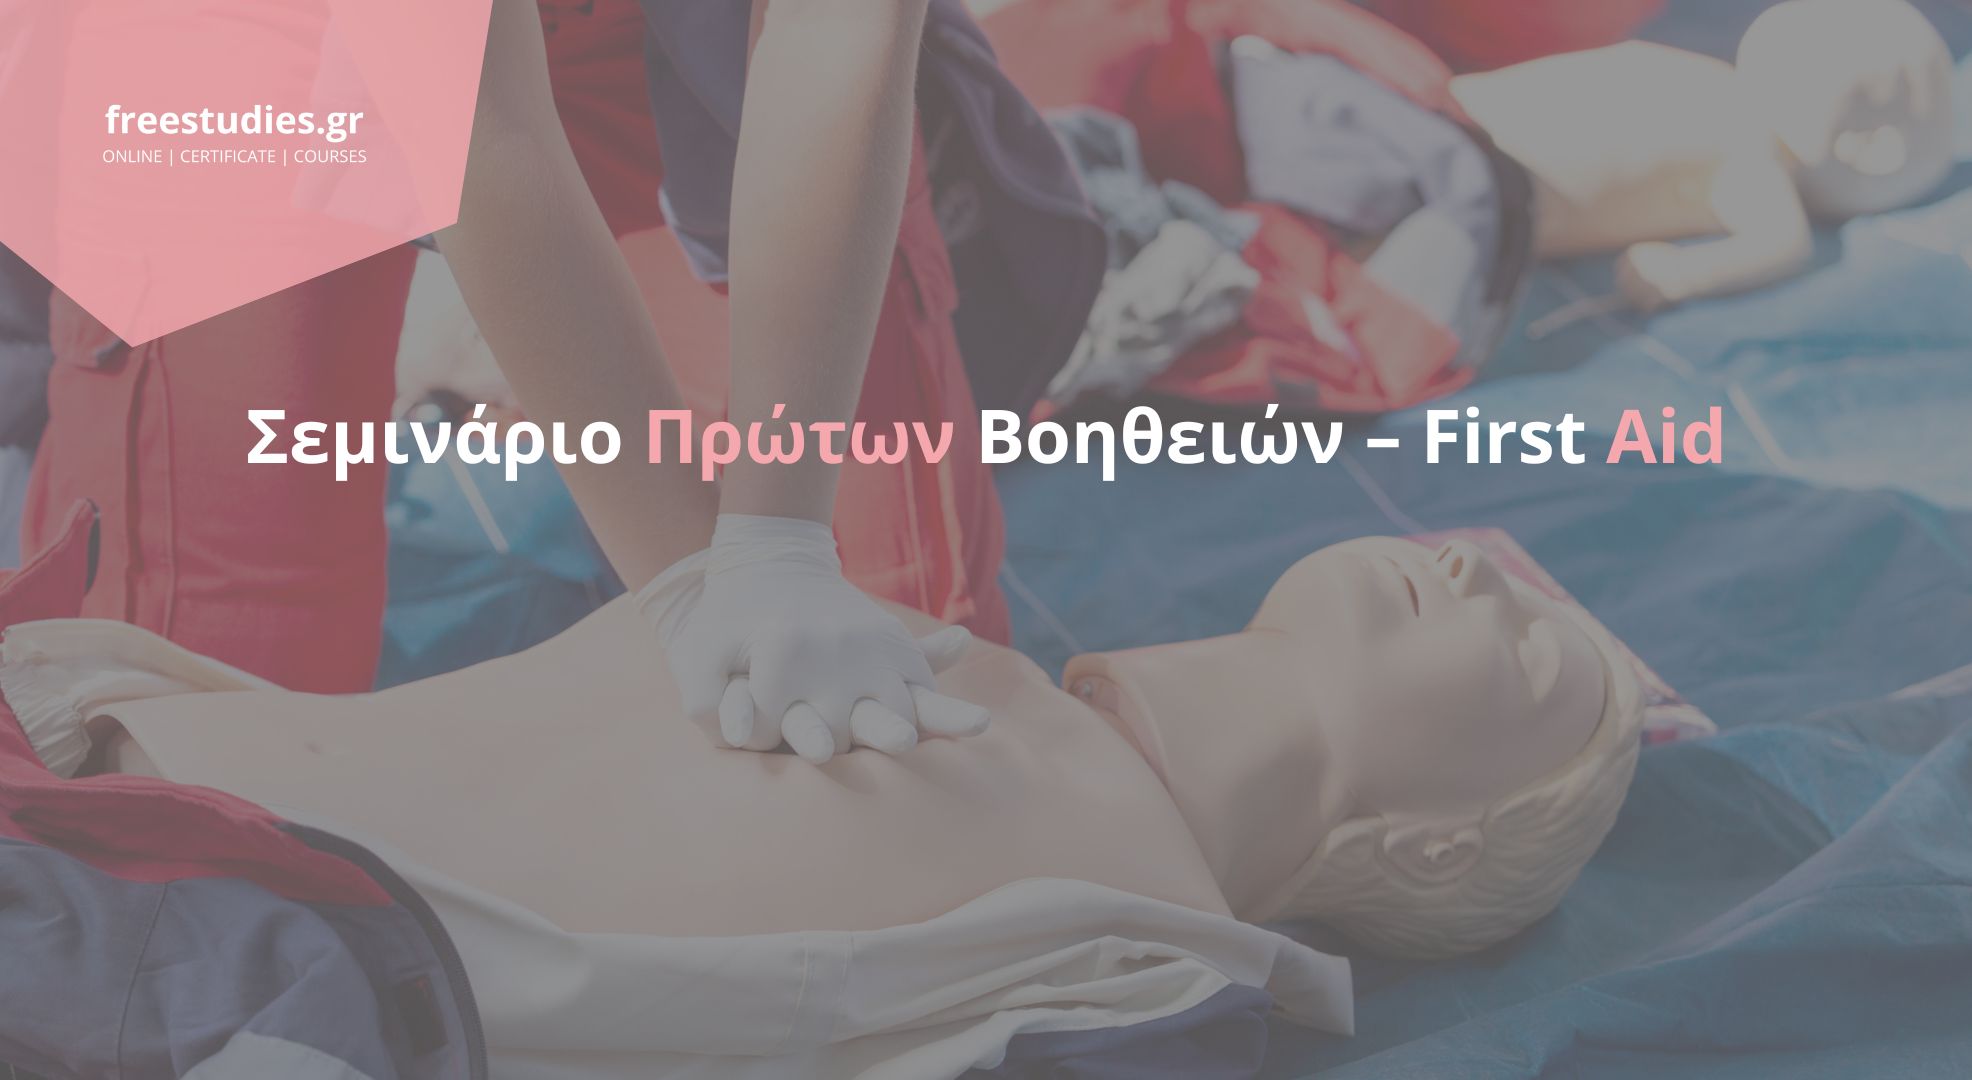 Σεμινάριο Πρώτων Βοηθειών – First Aid